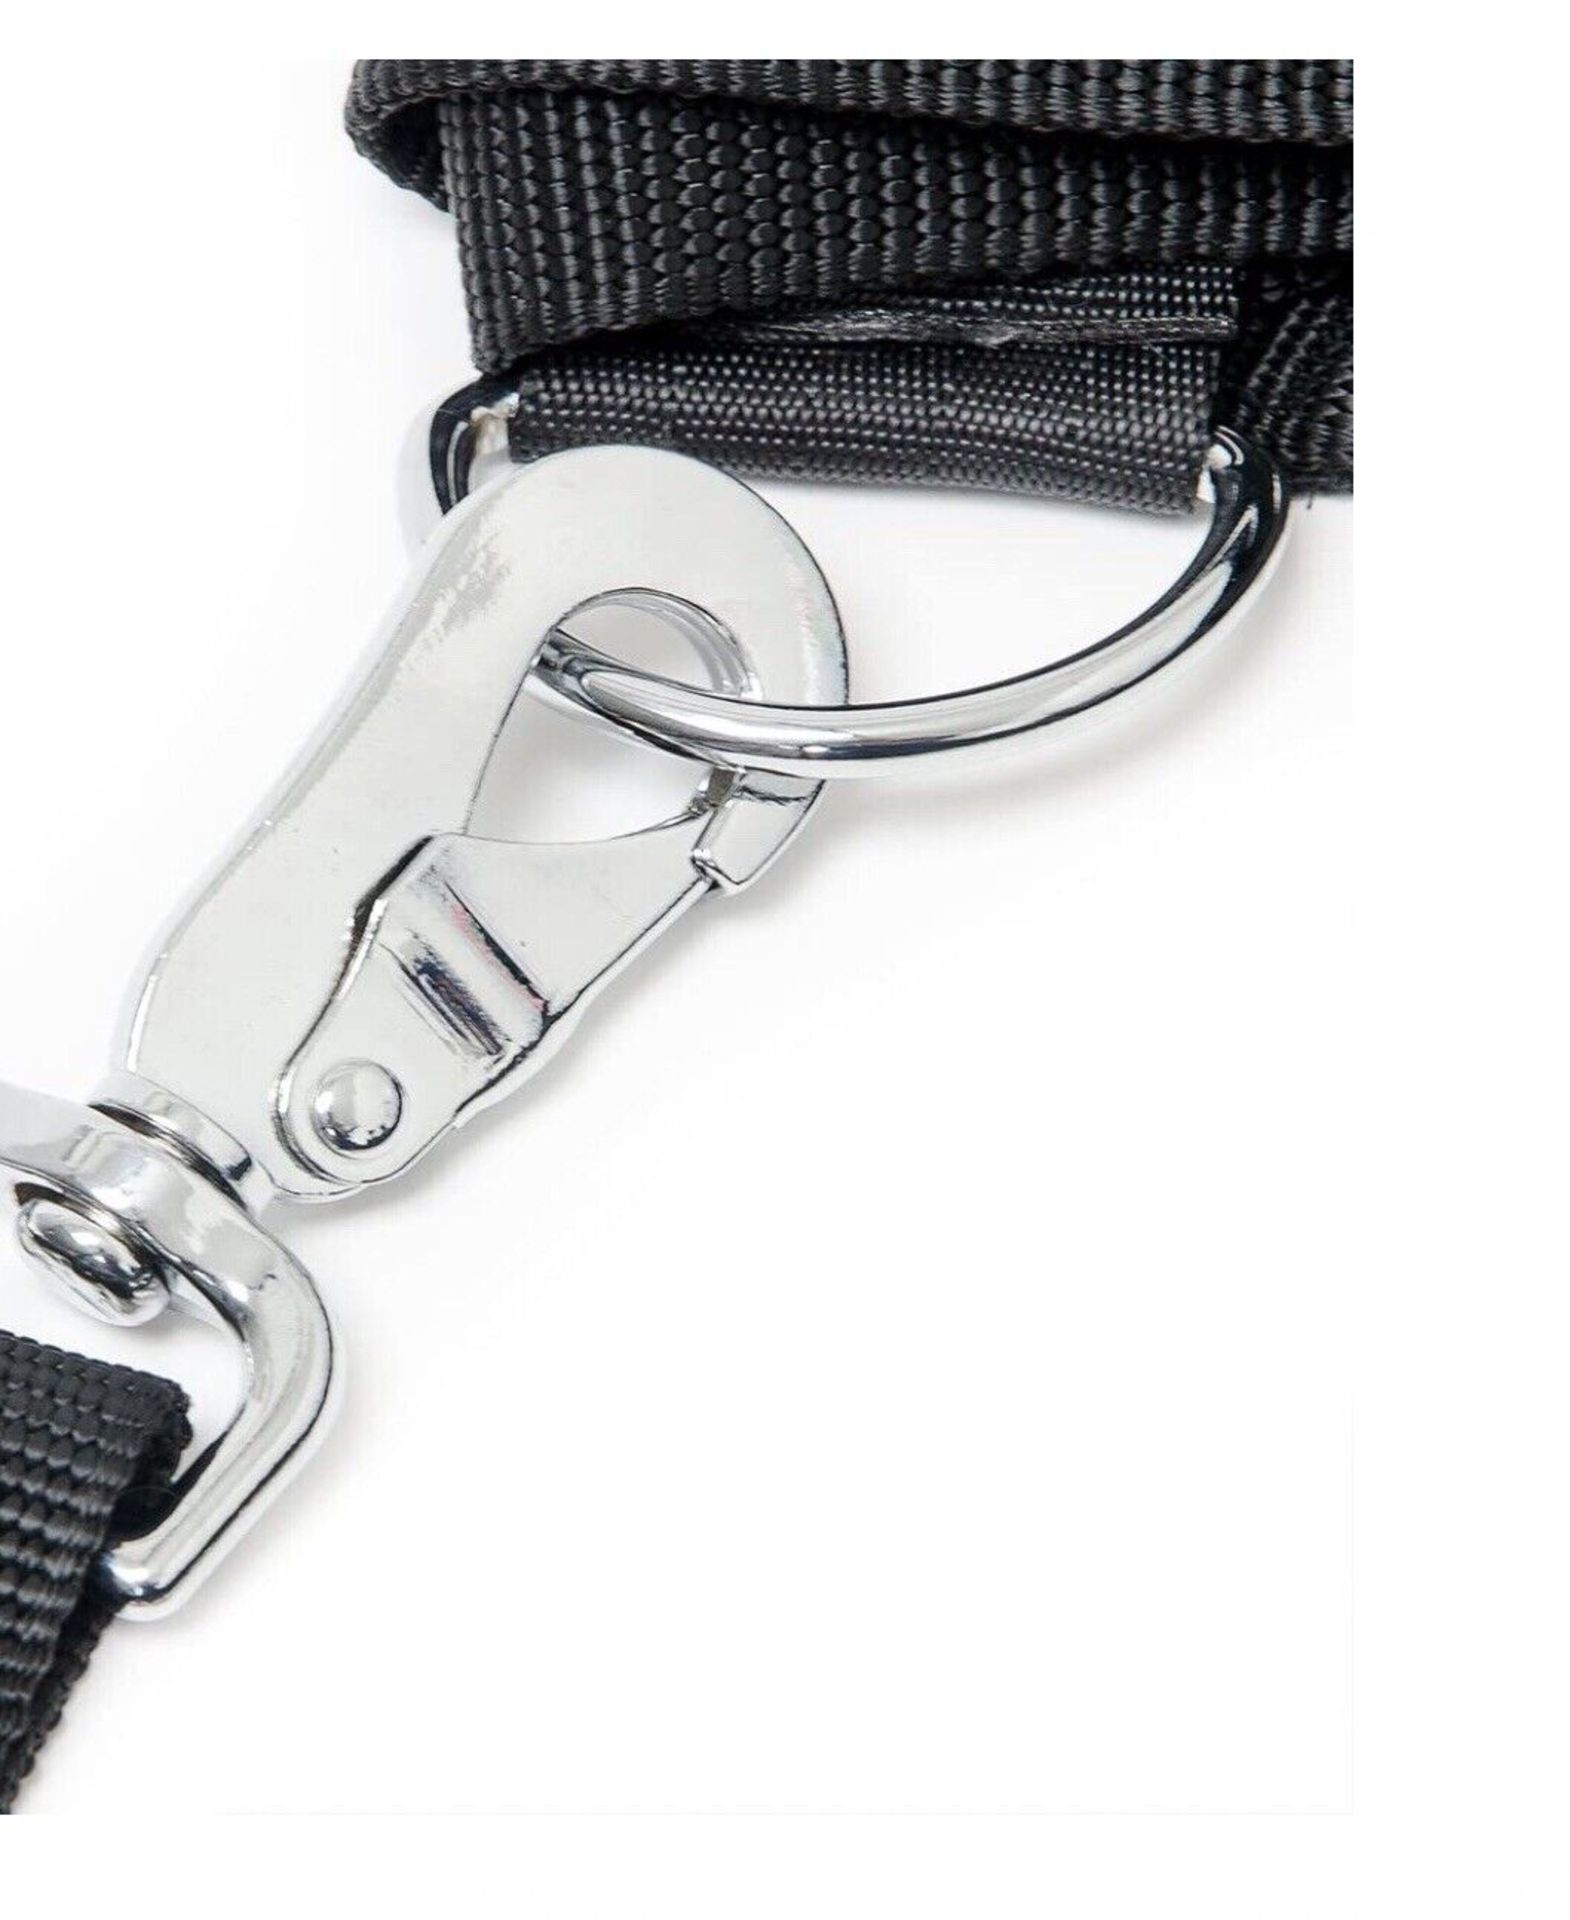 Dog Car Seat Belt Adjustable Safety Harnesses Lead Travel Restraint For Dog Lead. - Image 6 of 7